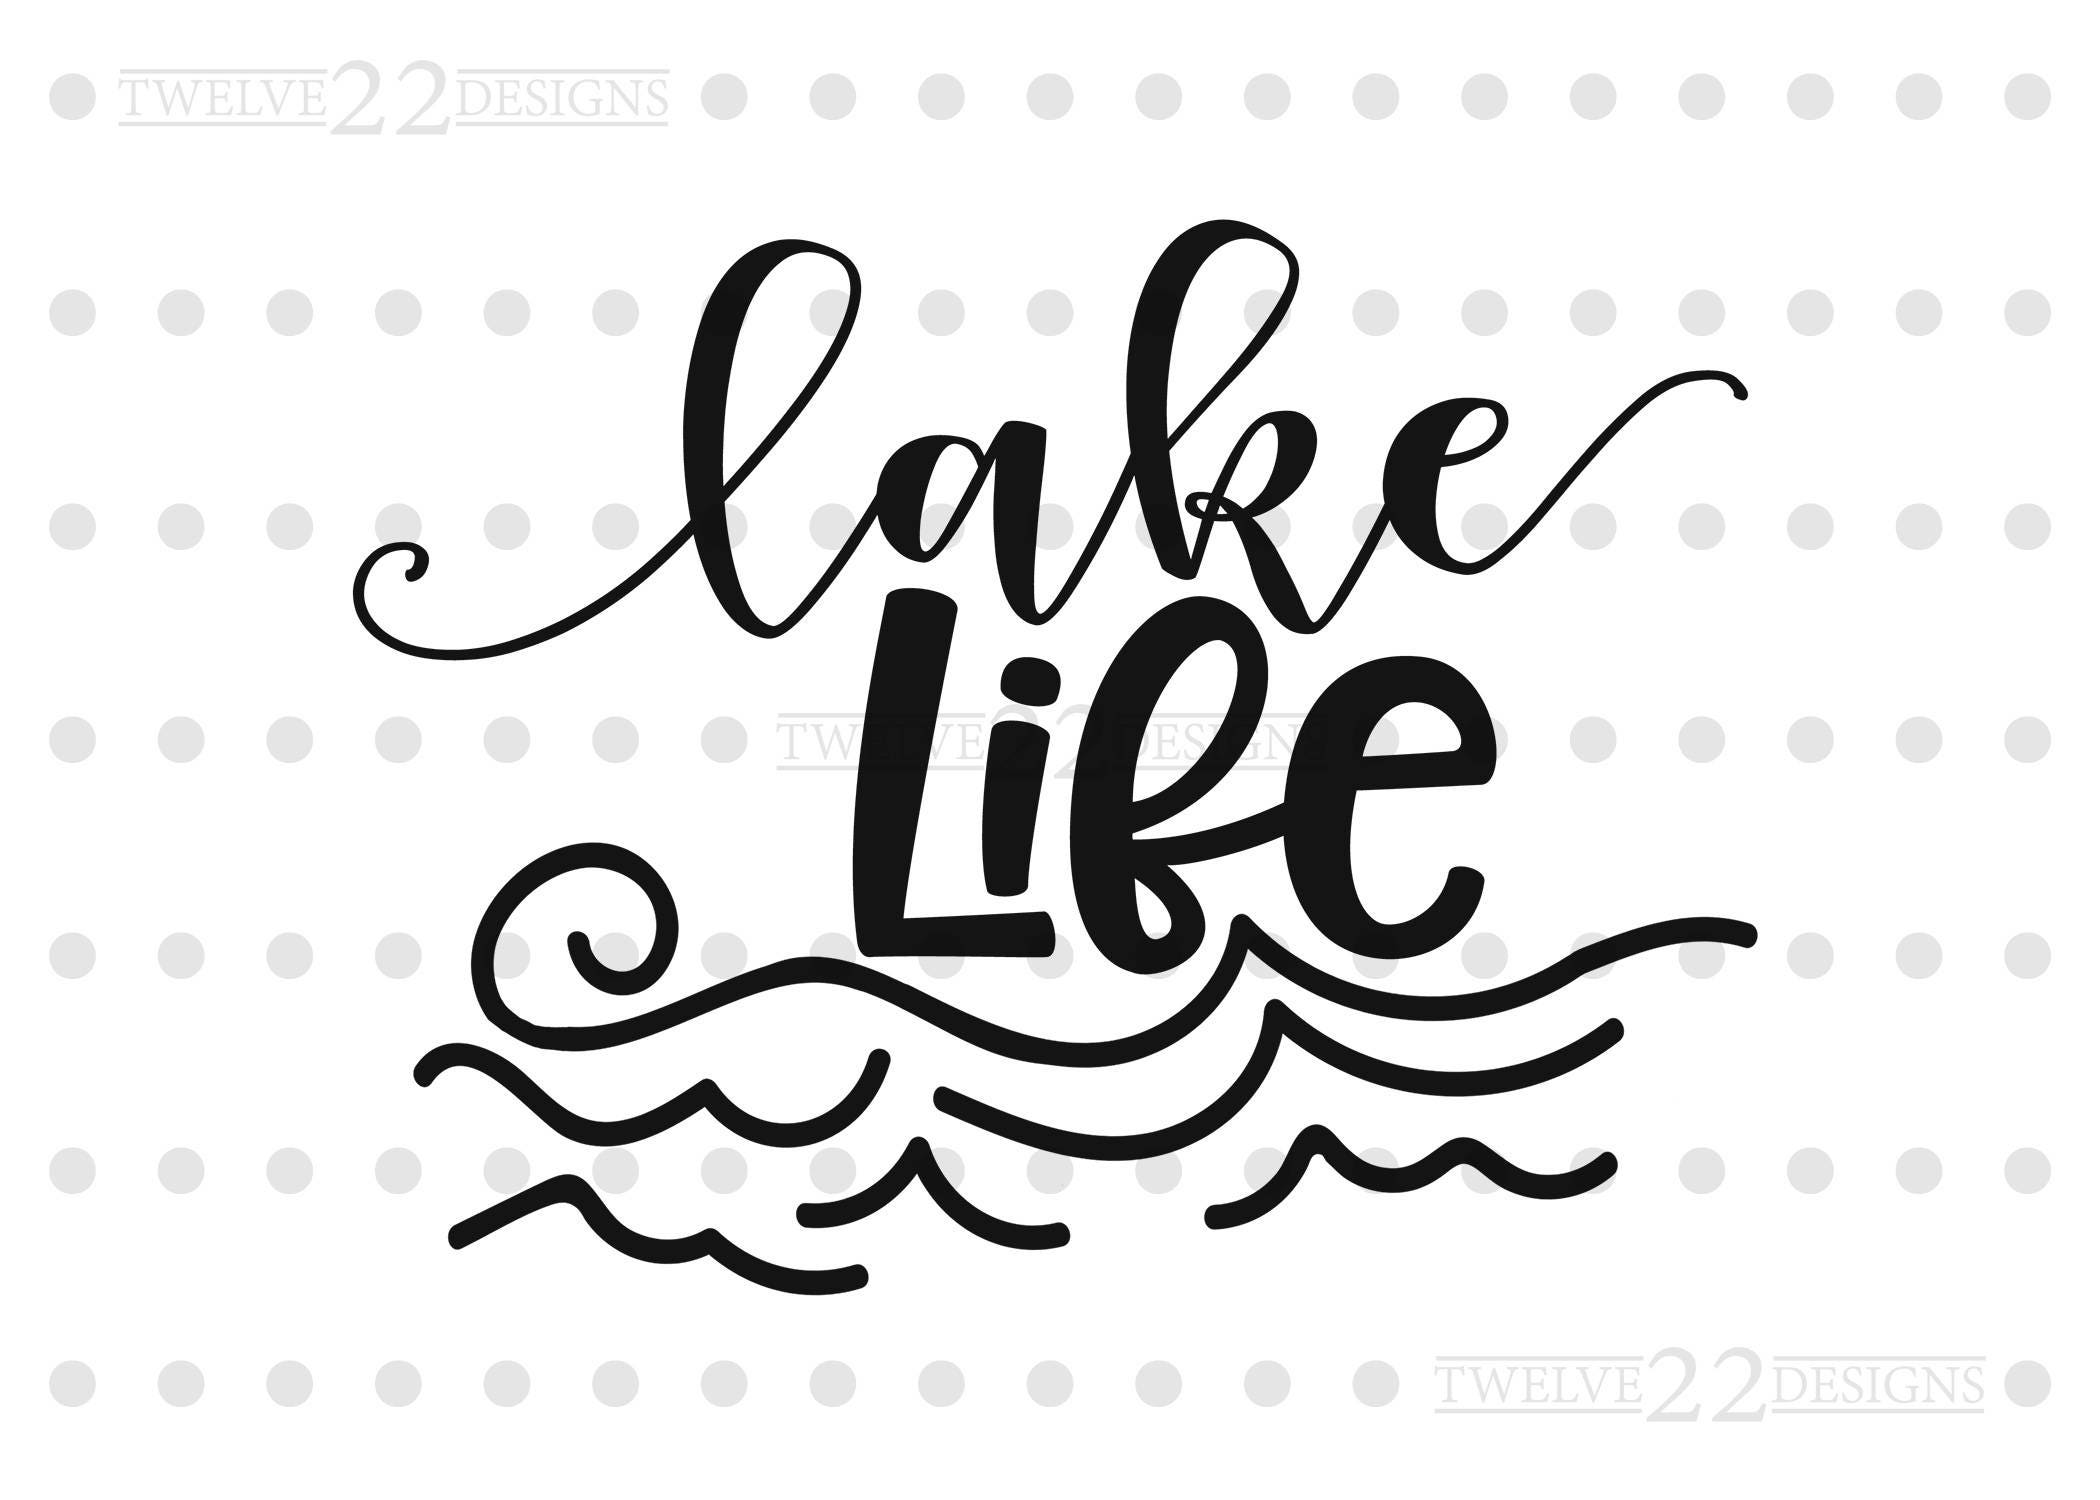 Free Free Lake Life Svg Free 754 SVG PNG EPS DXF File